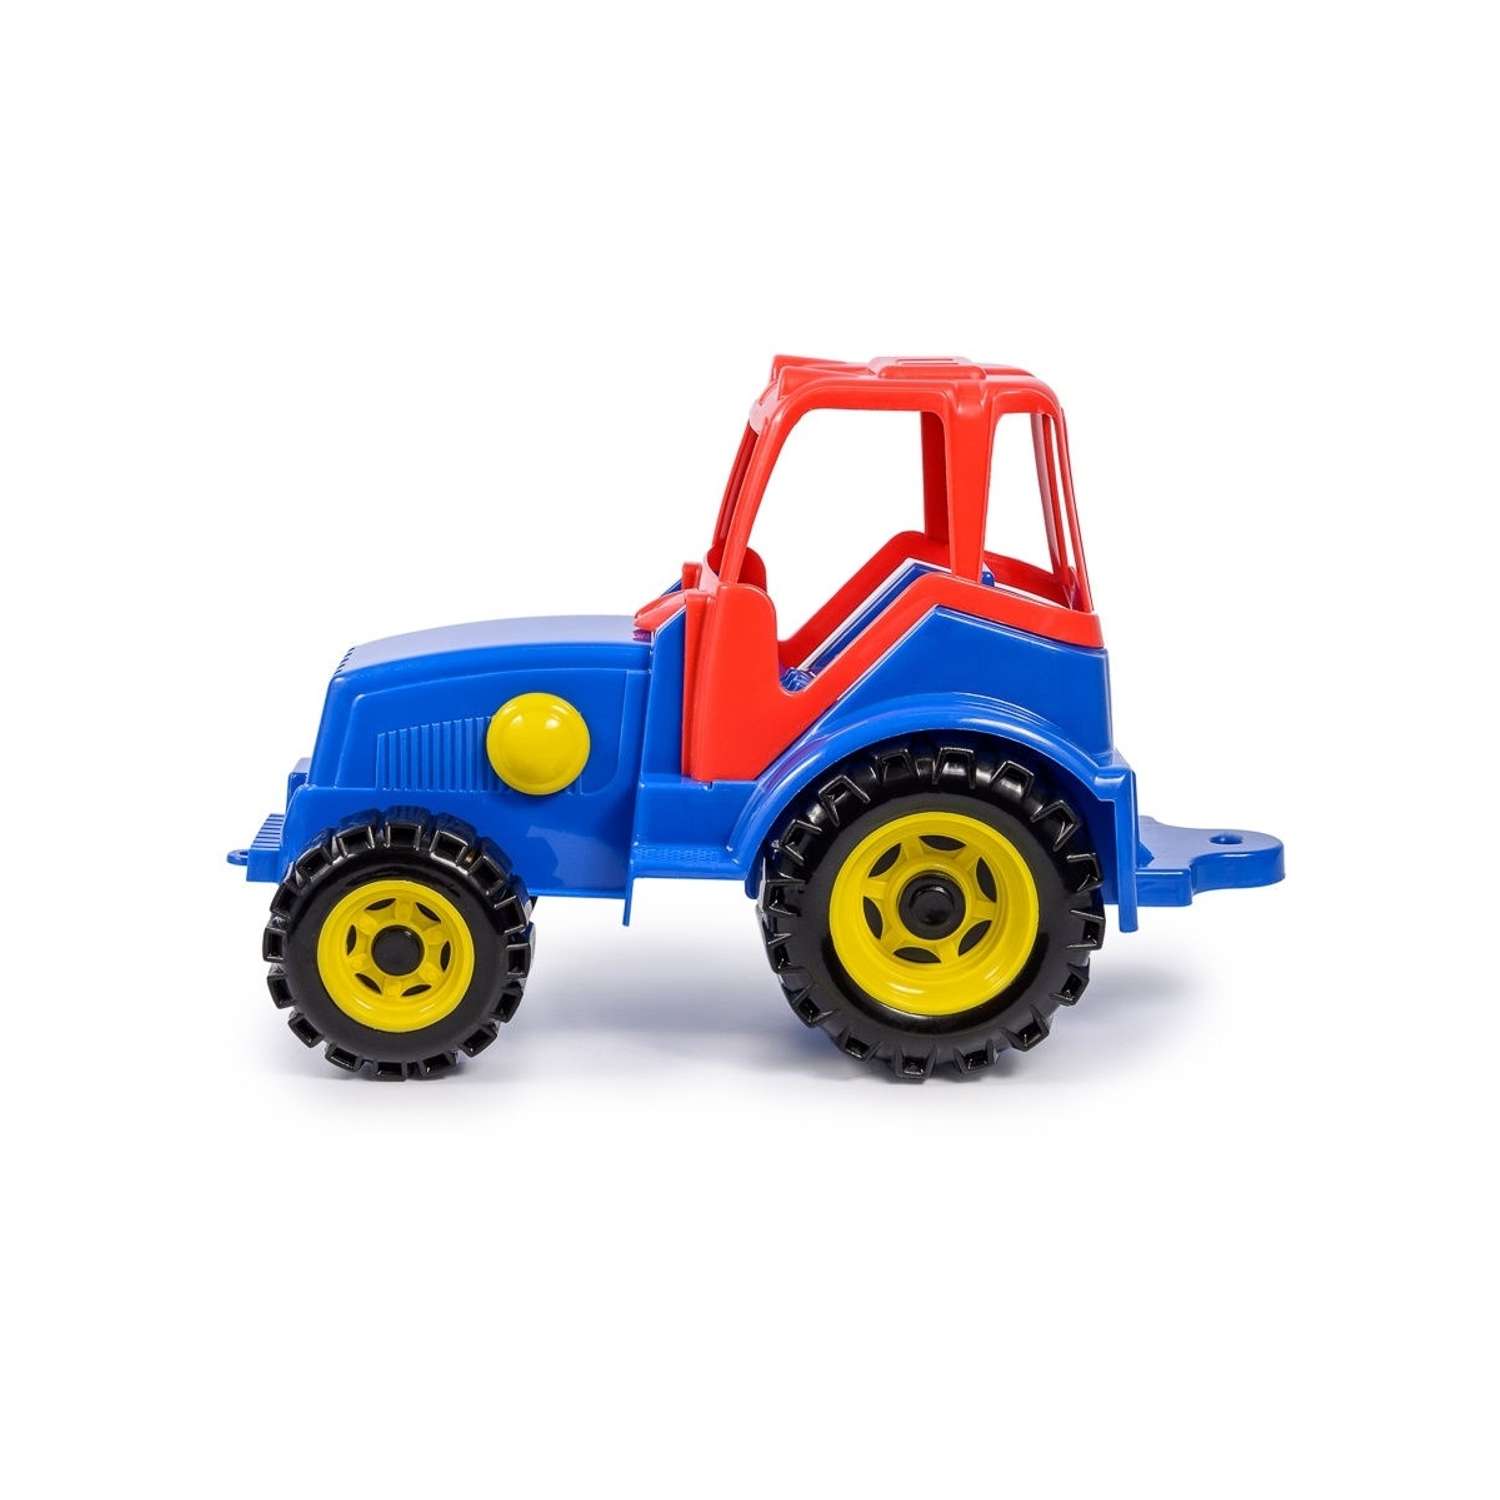 Синий трактор большой Green Plast машинка детская игрушечная для мальчиков ТР001 - фото 2